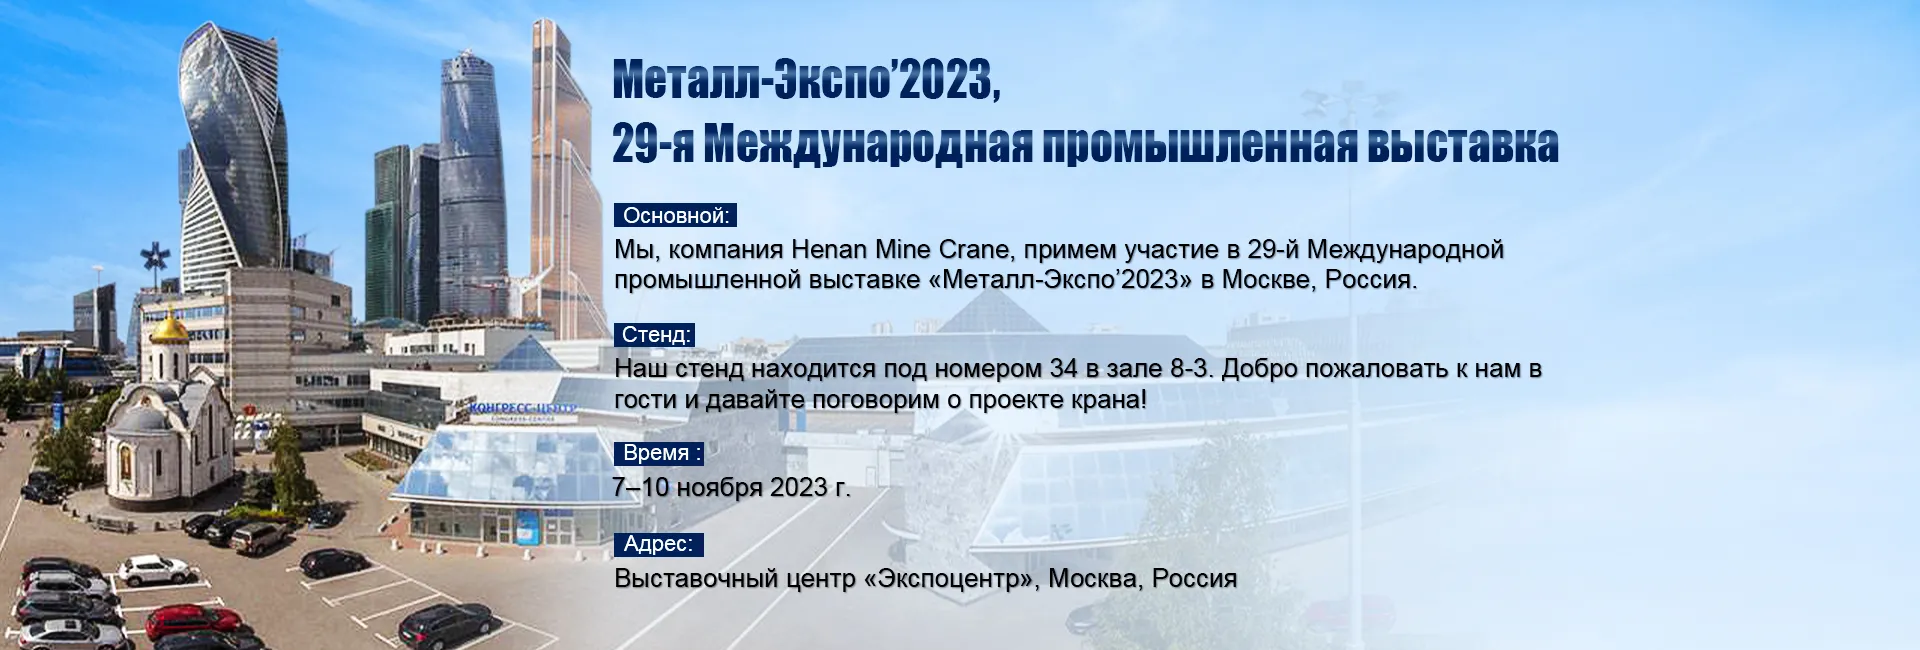 Мы, компания Henan Mine Crane, примем участие в 29-й Международной промышленной выставке «Металл-Экспо’2023» в Москве, Россия.